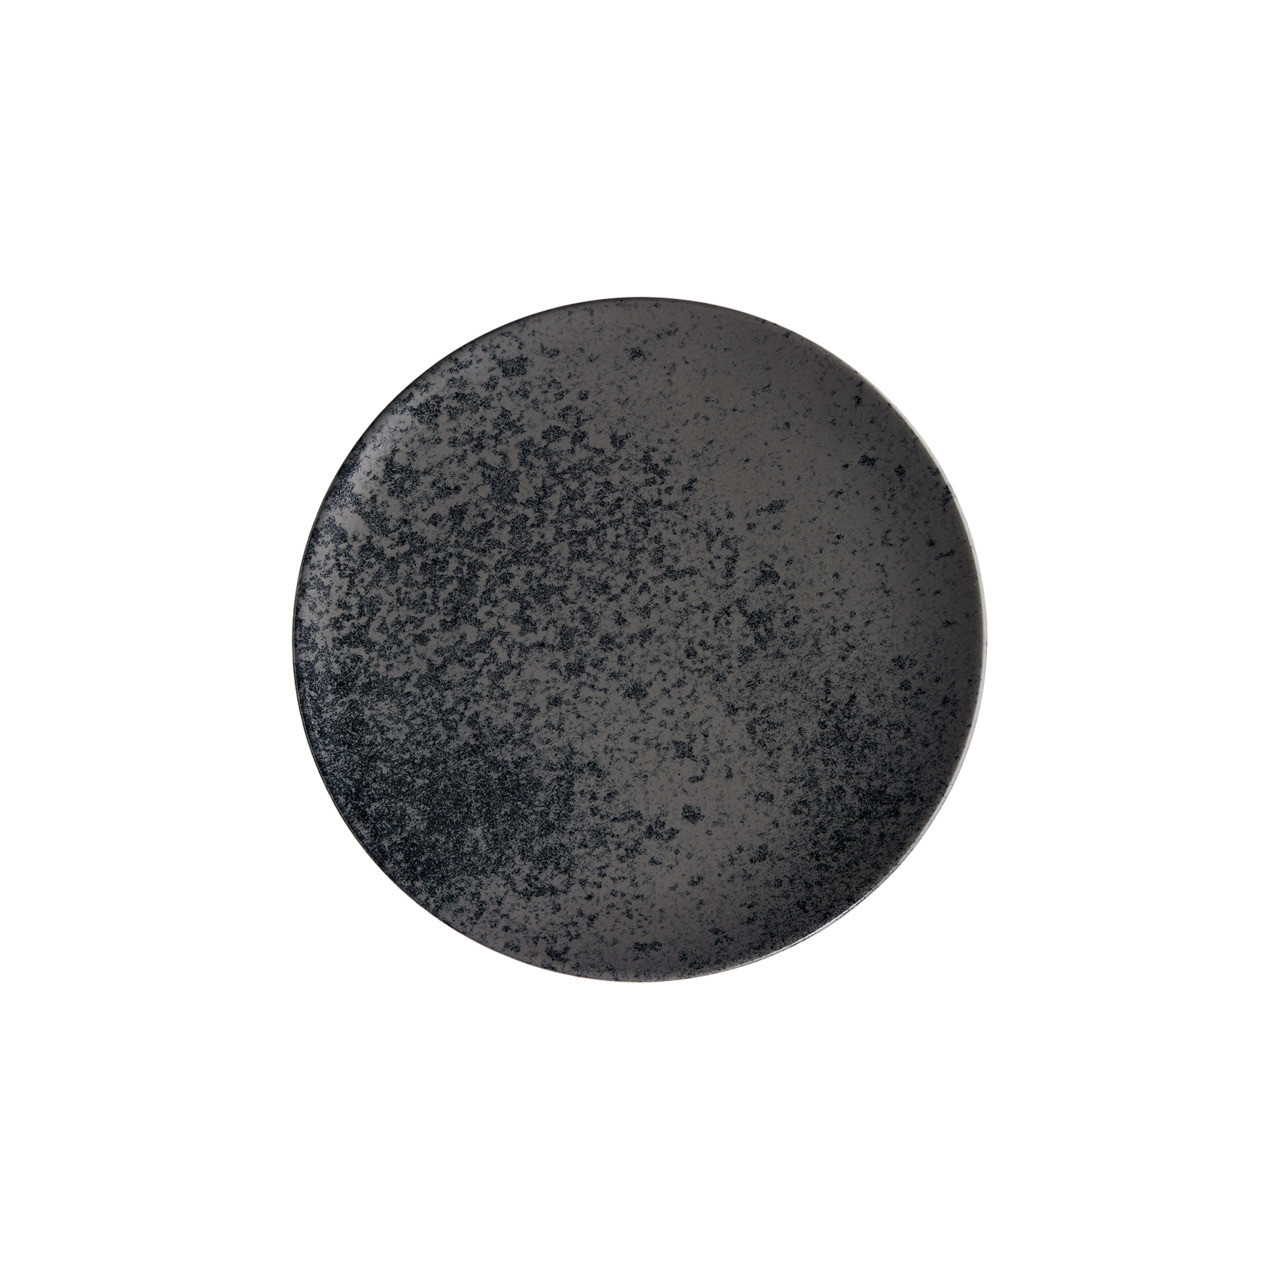 Sandstone, Coupteller flach rund ø 229 mm black